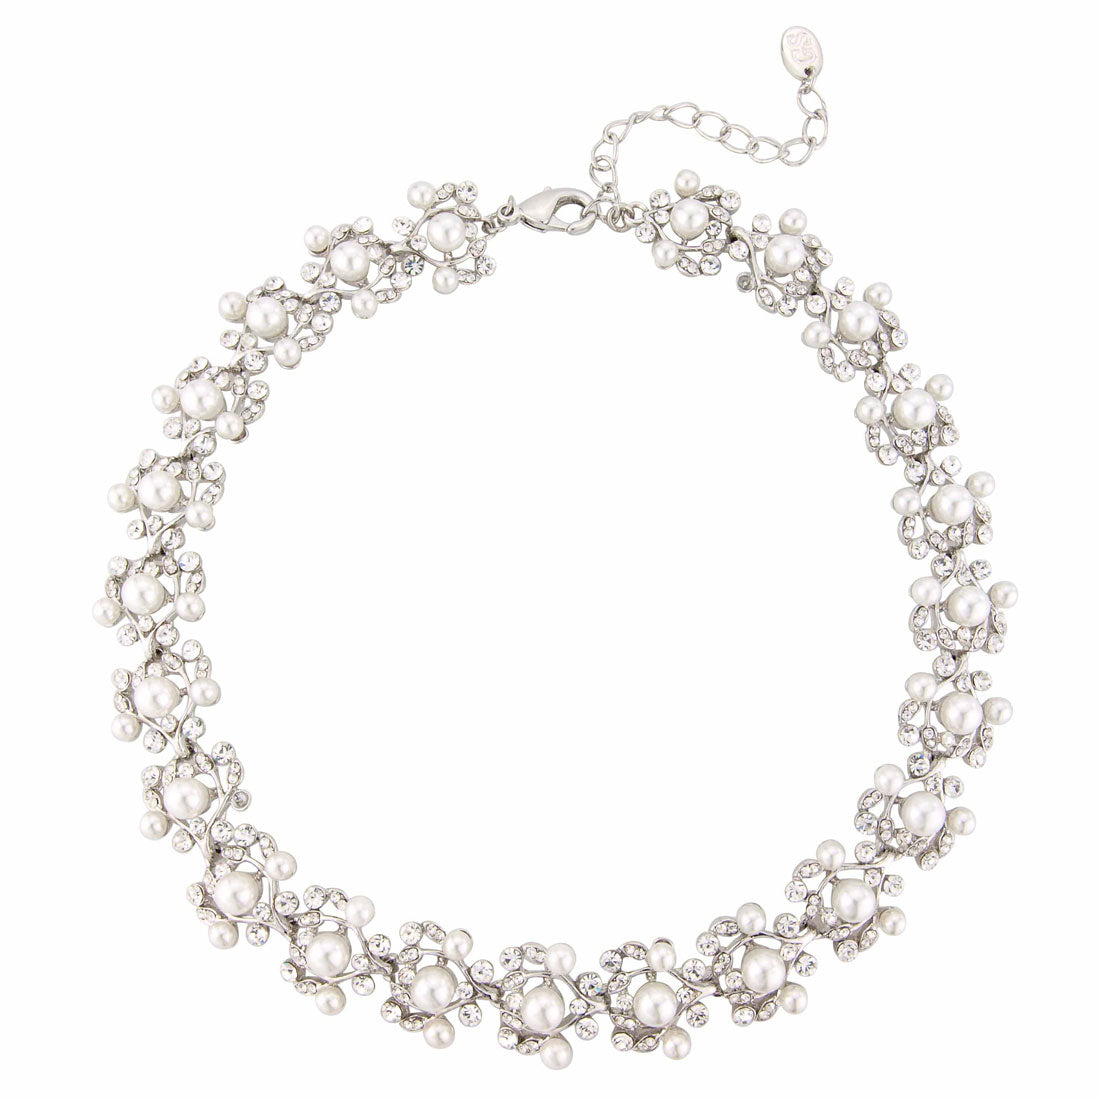 Precious in Pearls Vintage Style Bridal Necklace